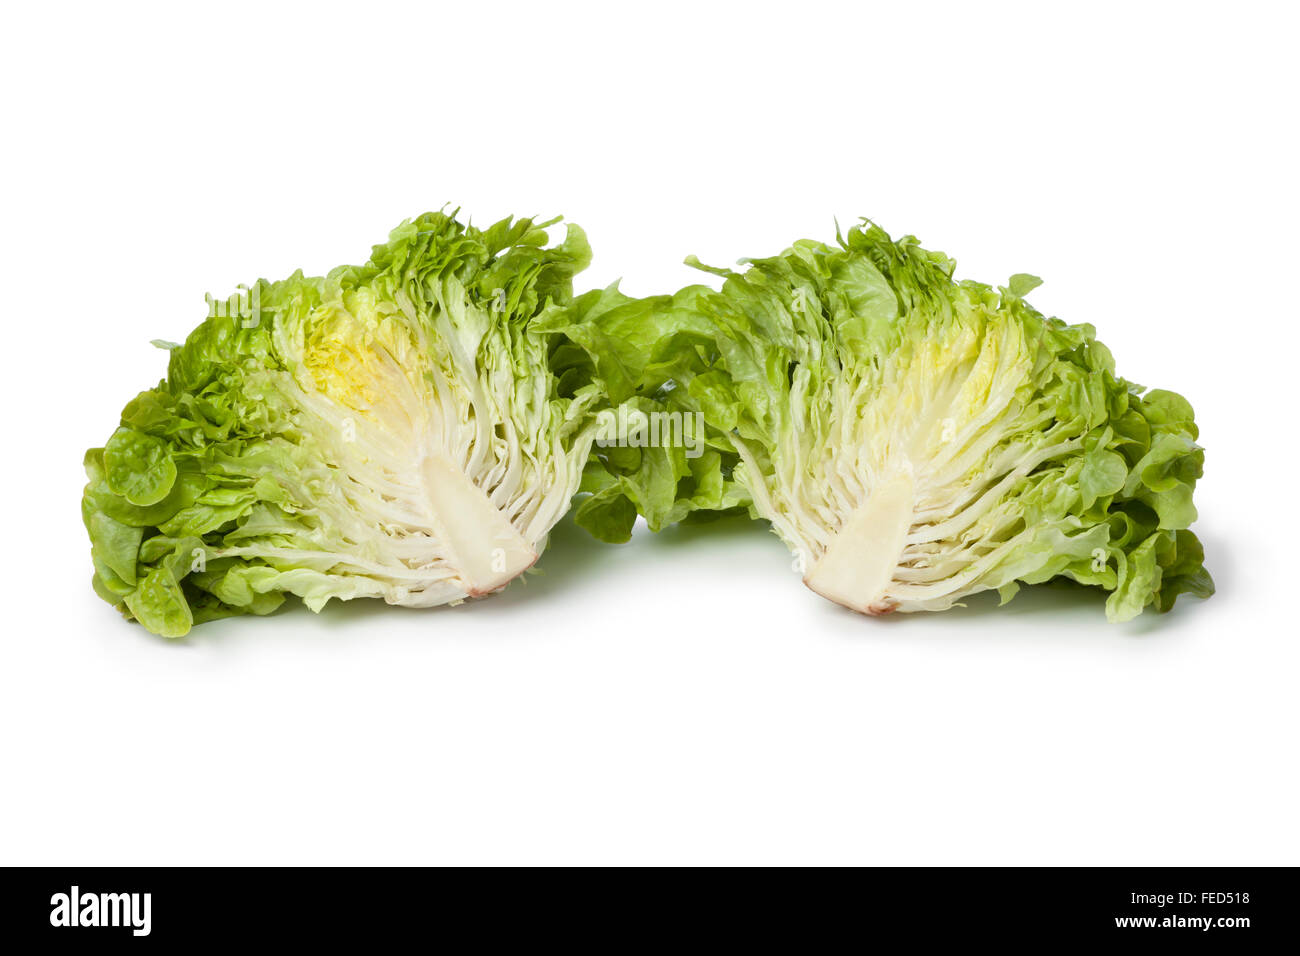 Inside of fresh green oak leaf lettuce on white background Stock Photo